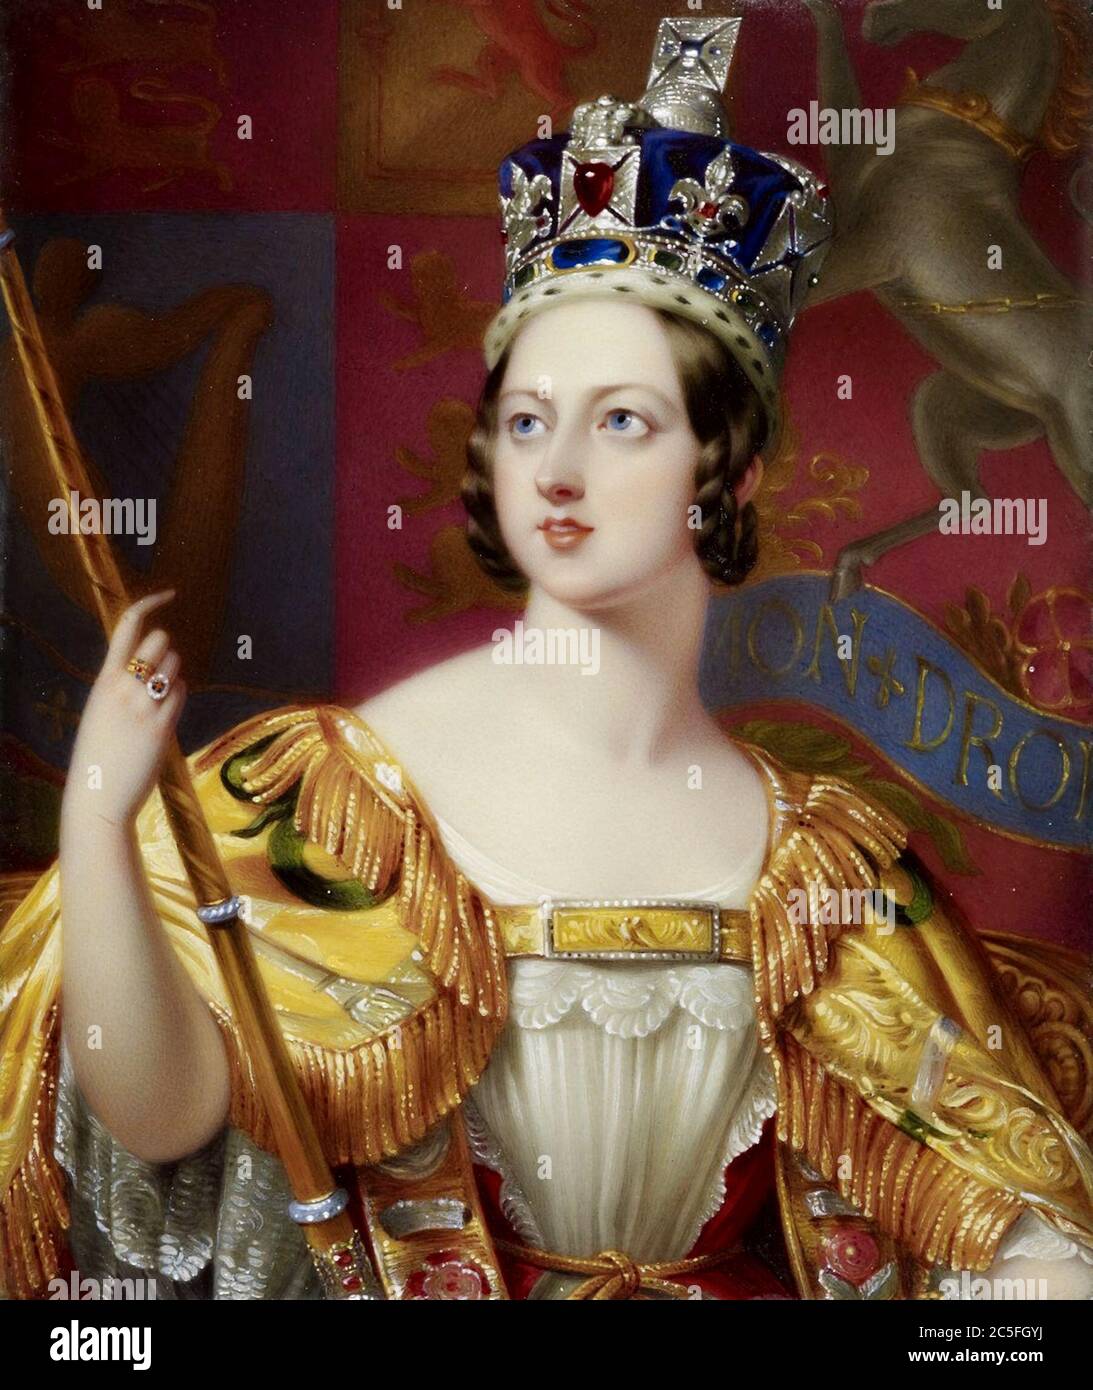 Victoria (Alexandrina Victoria; 1819 – 1901) Reine du Royaume-Uni de Grande-Bretagne et d'Irlande du 20 juin 1837 jusqu'à sa mort. Portrait de couronnement Banque D'Images